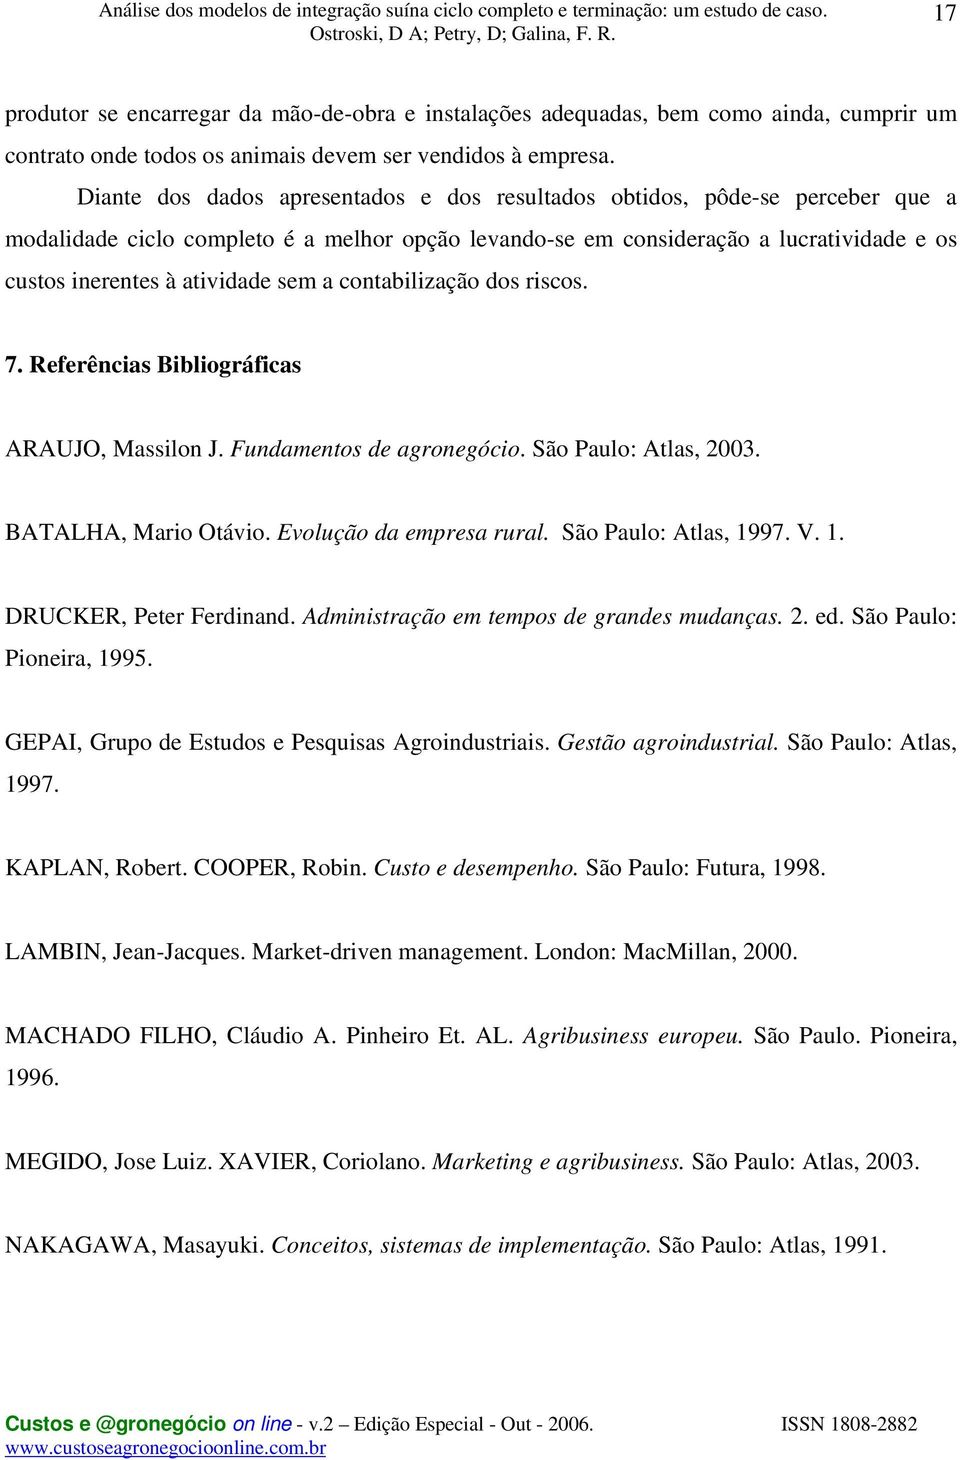 sem a contabilização dos riscos. 7. Referências Bibliográficas ARAUJO, Massilon J. Fundamentos de agronegócio. São Paulo: Atlas, 2003. BATALHA, Mario Otávio. Evolução da empresa rural.